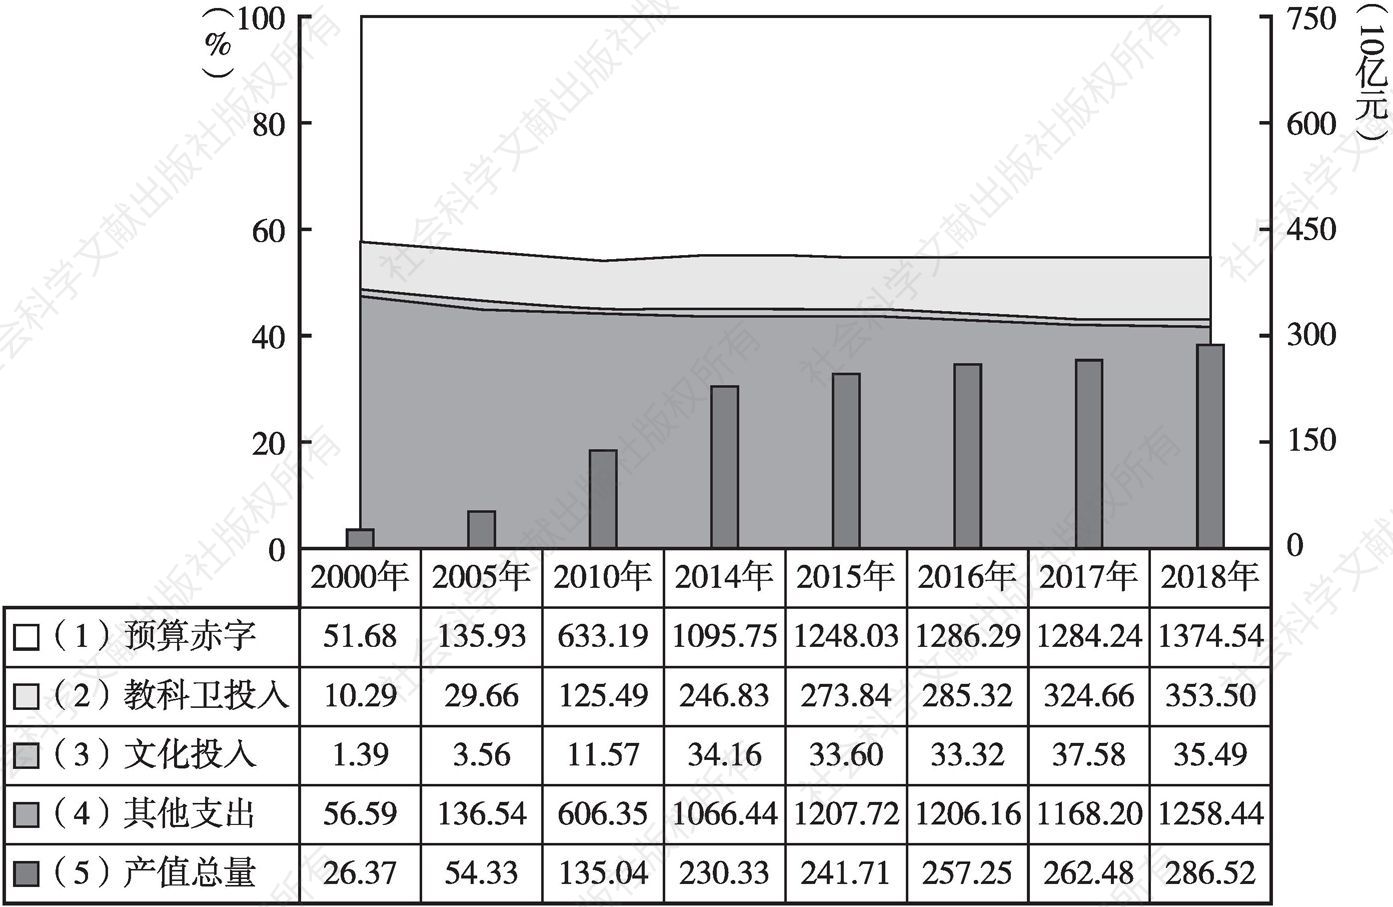 图1 2000年以来青海文化投入总量增长及相关背景关系态势